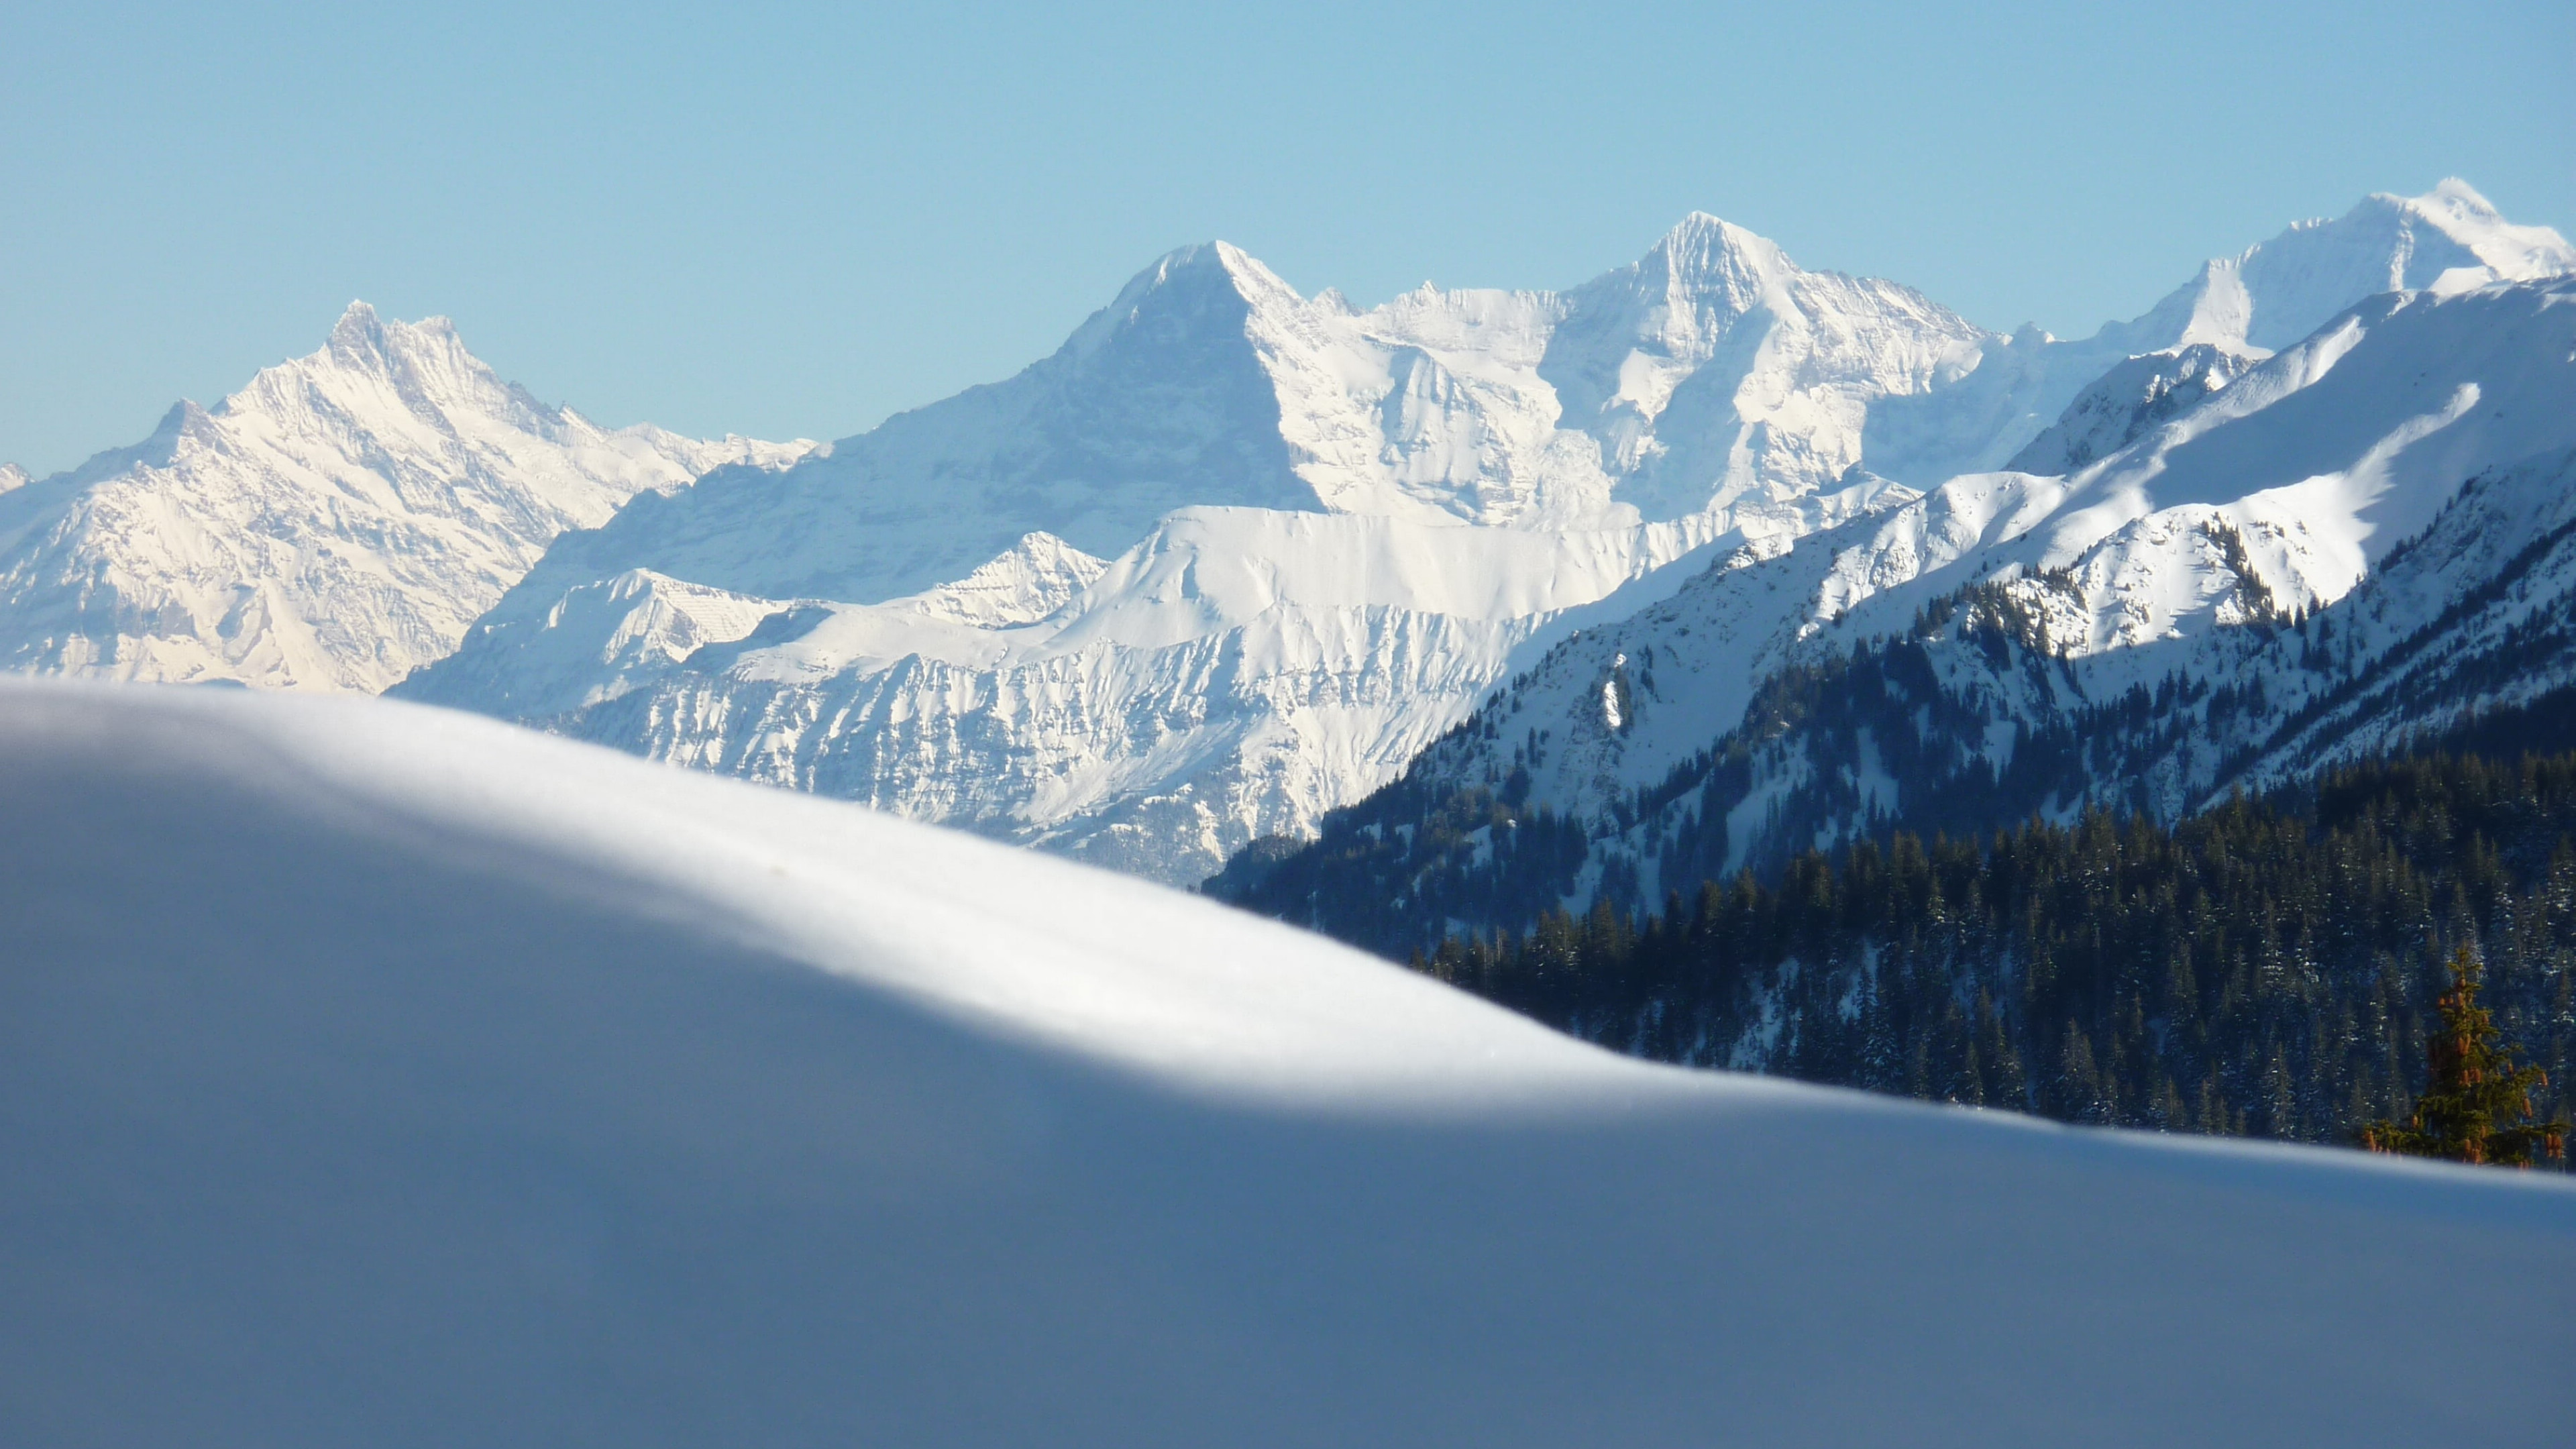 瑞士少女峰风景图片桌面壁纸